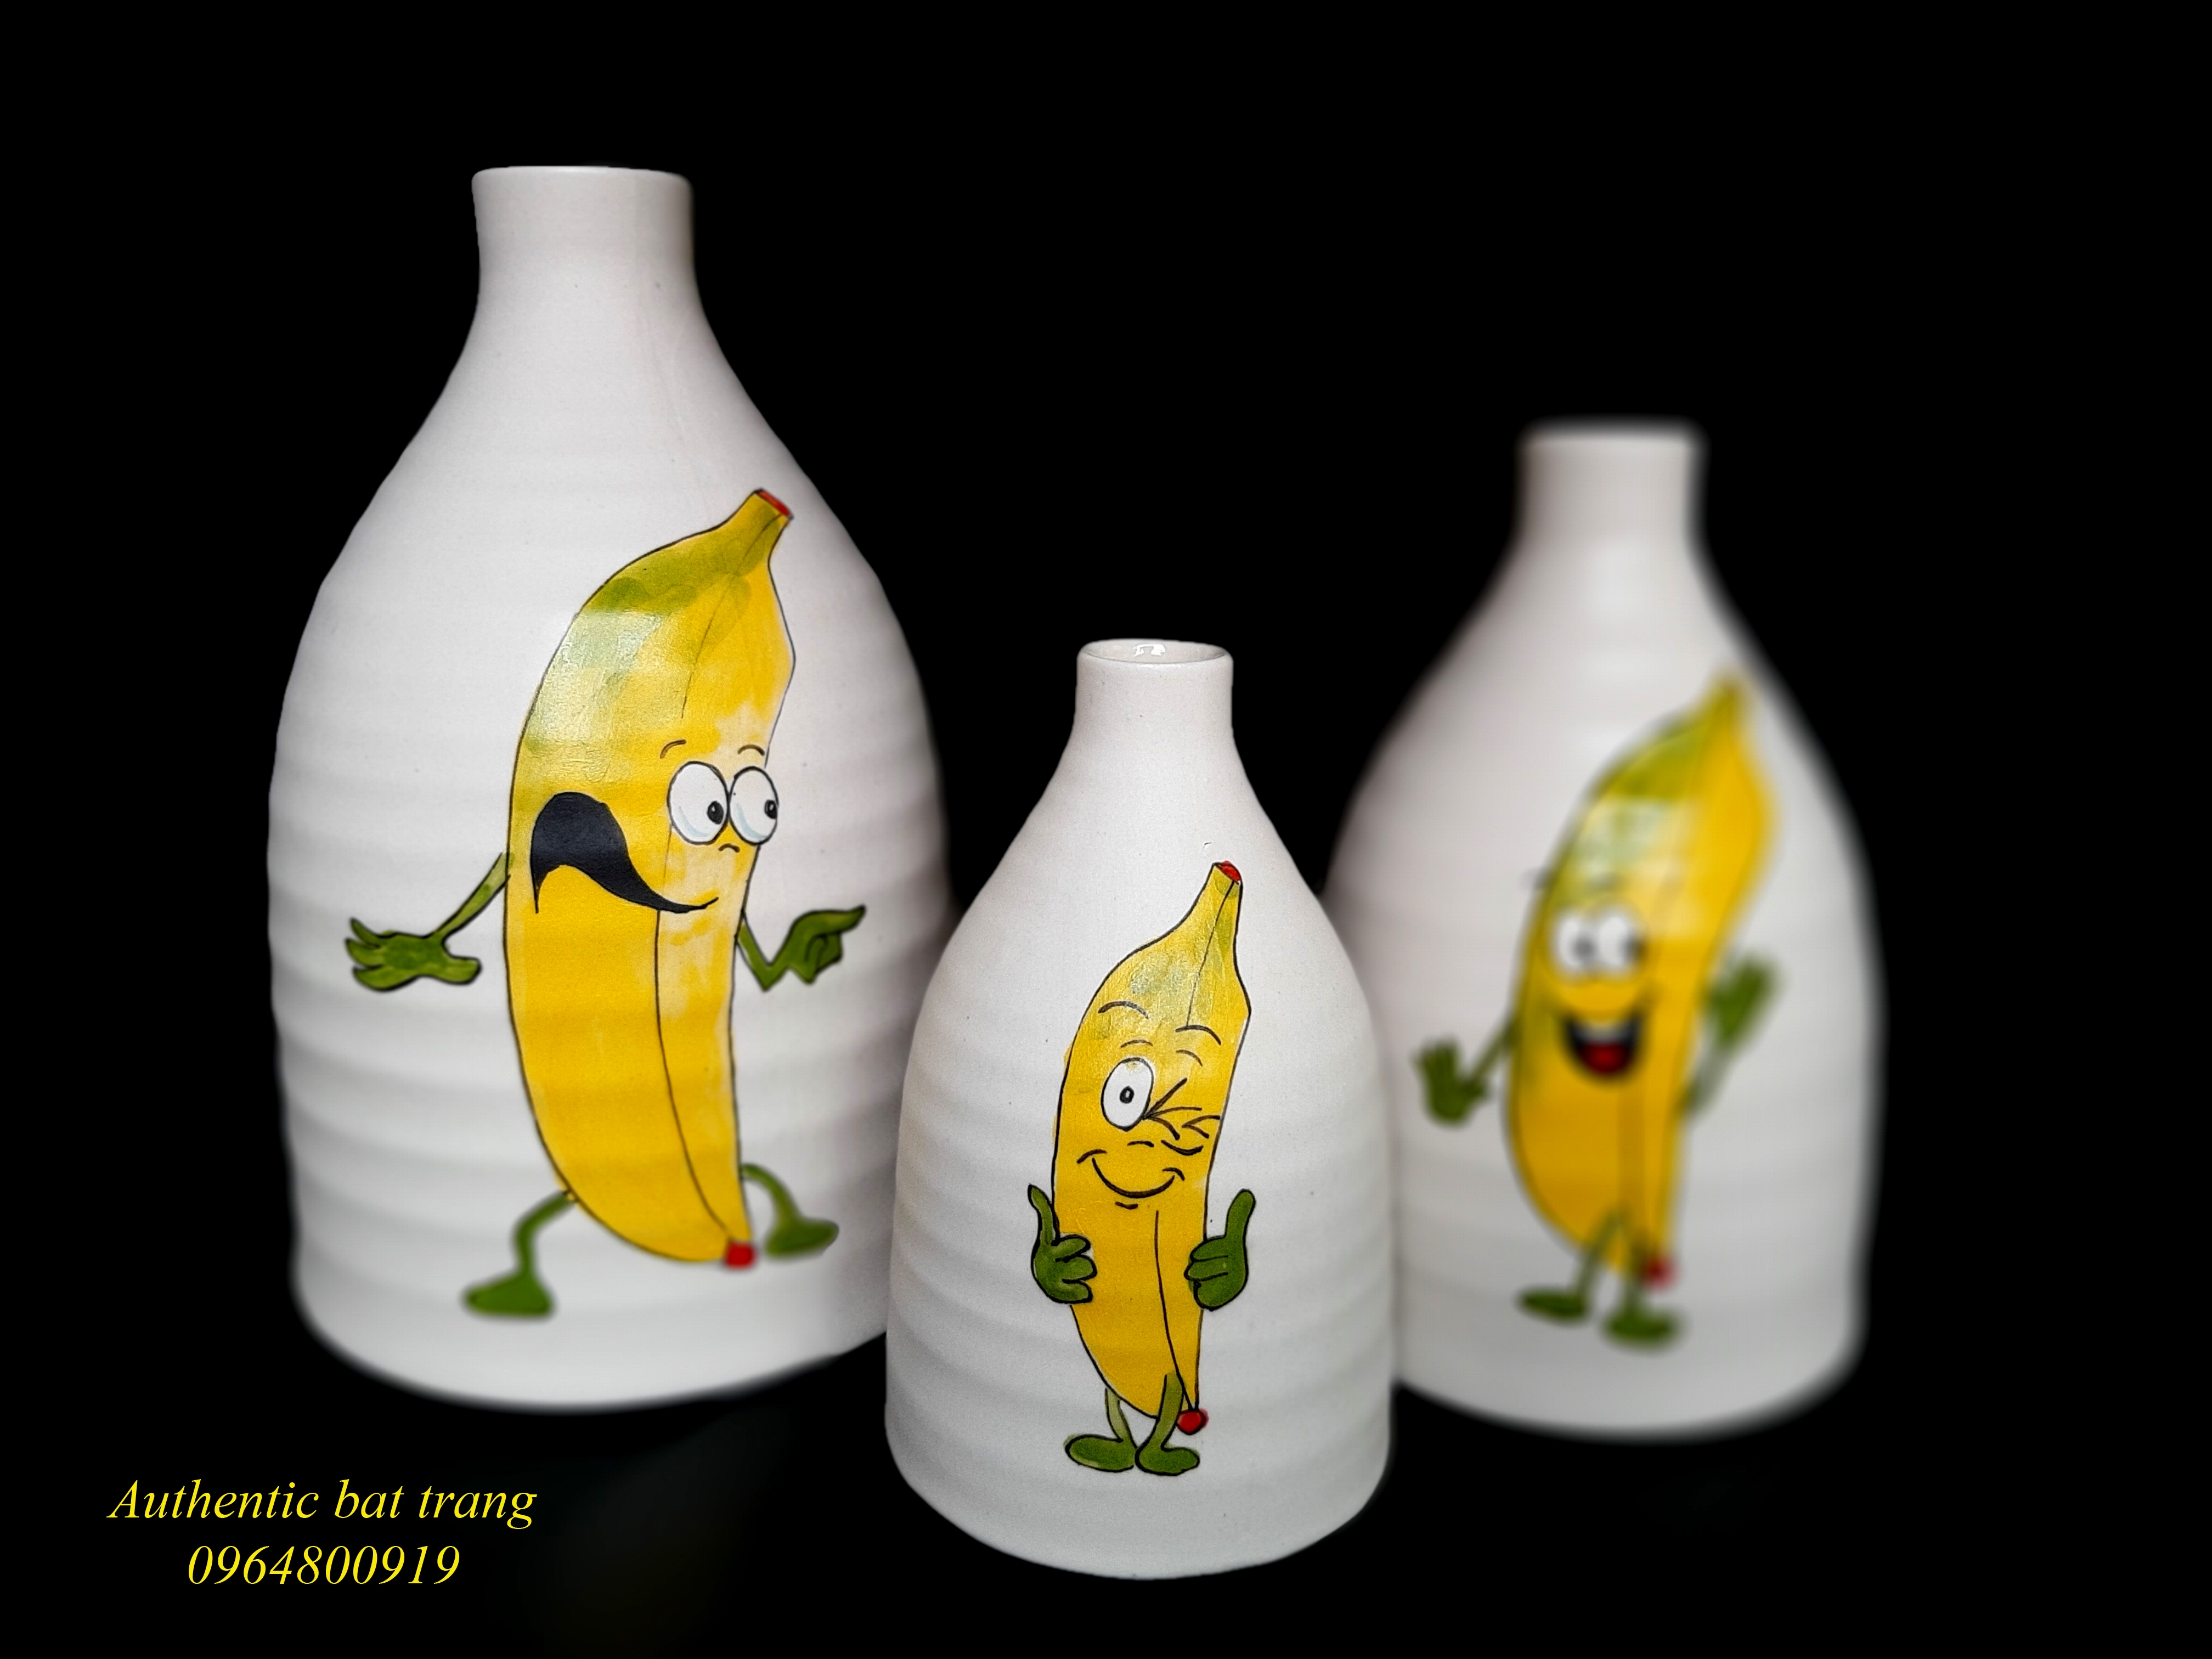 Banana vase set/ Bộ bình chuối trang trí nhà cửa, sản phẩm vẽ tay thủ công tại xưởng gốm sứ Authentic bat trang